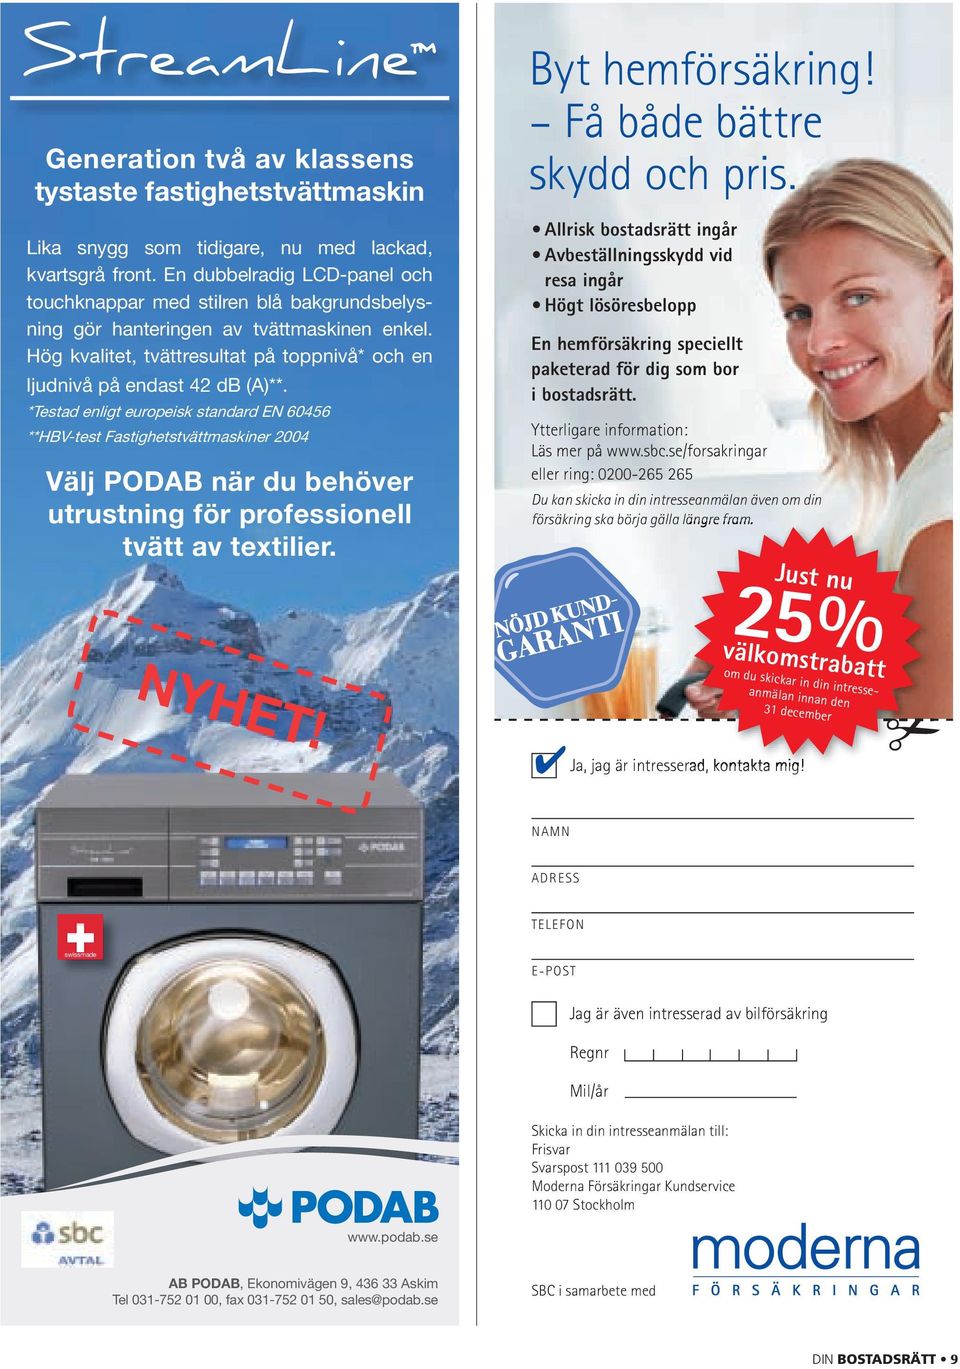 *Testad enligt europeisk standard EN 60456 **HBV-test Fastighetstvättmaskiner 2004 Välj PODAB när du behöver utrustning för professionell tvätt av textilier. Byt hemförsäkring!